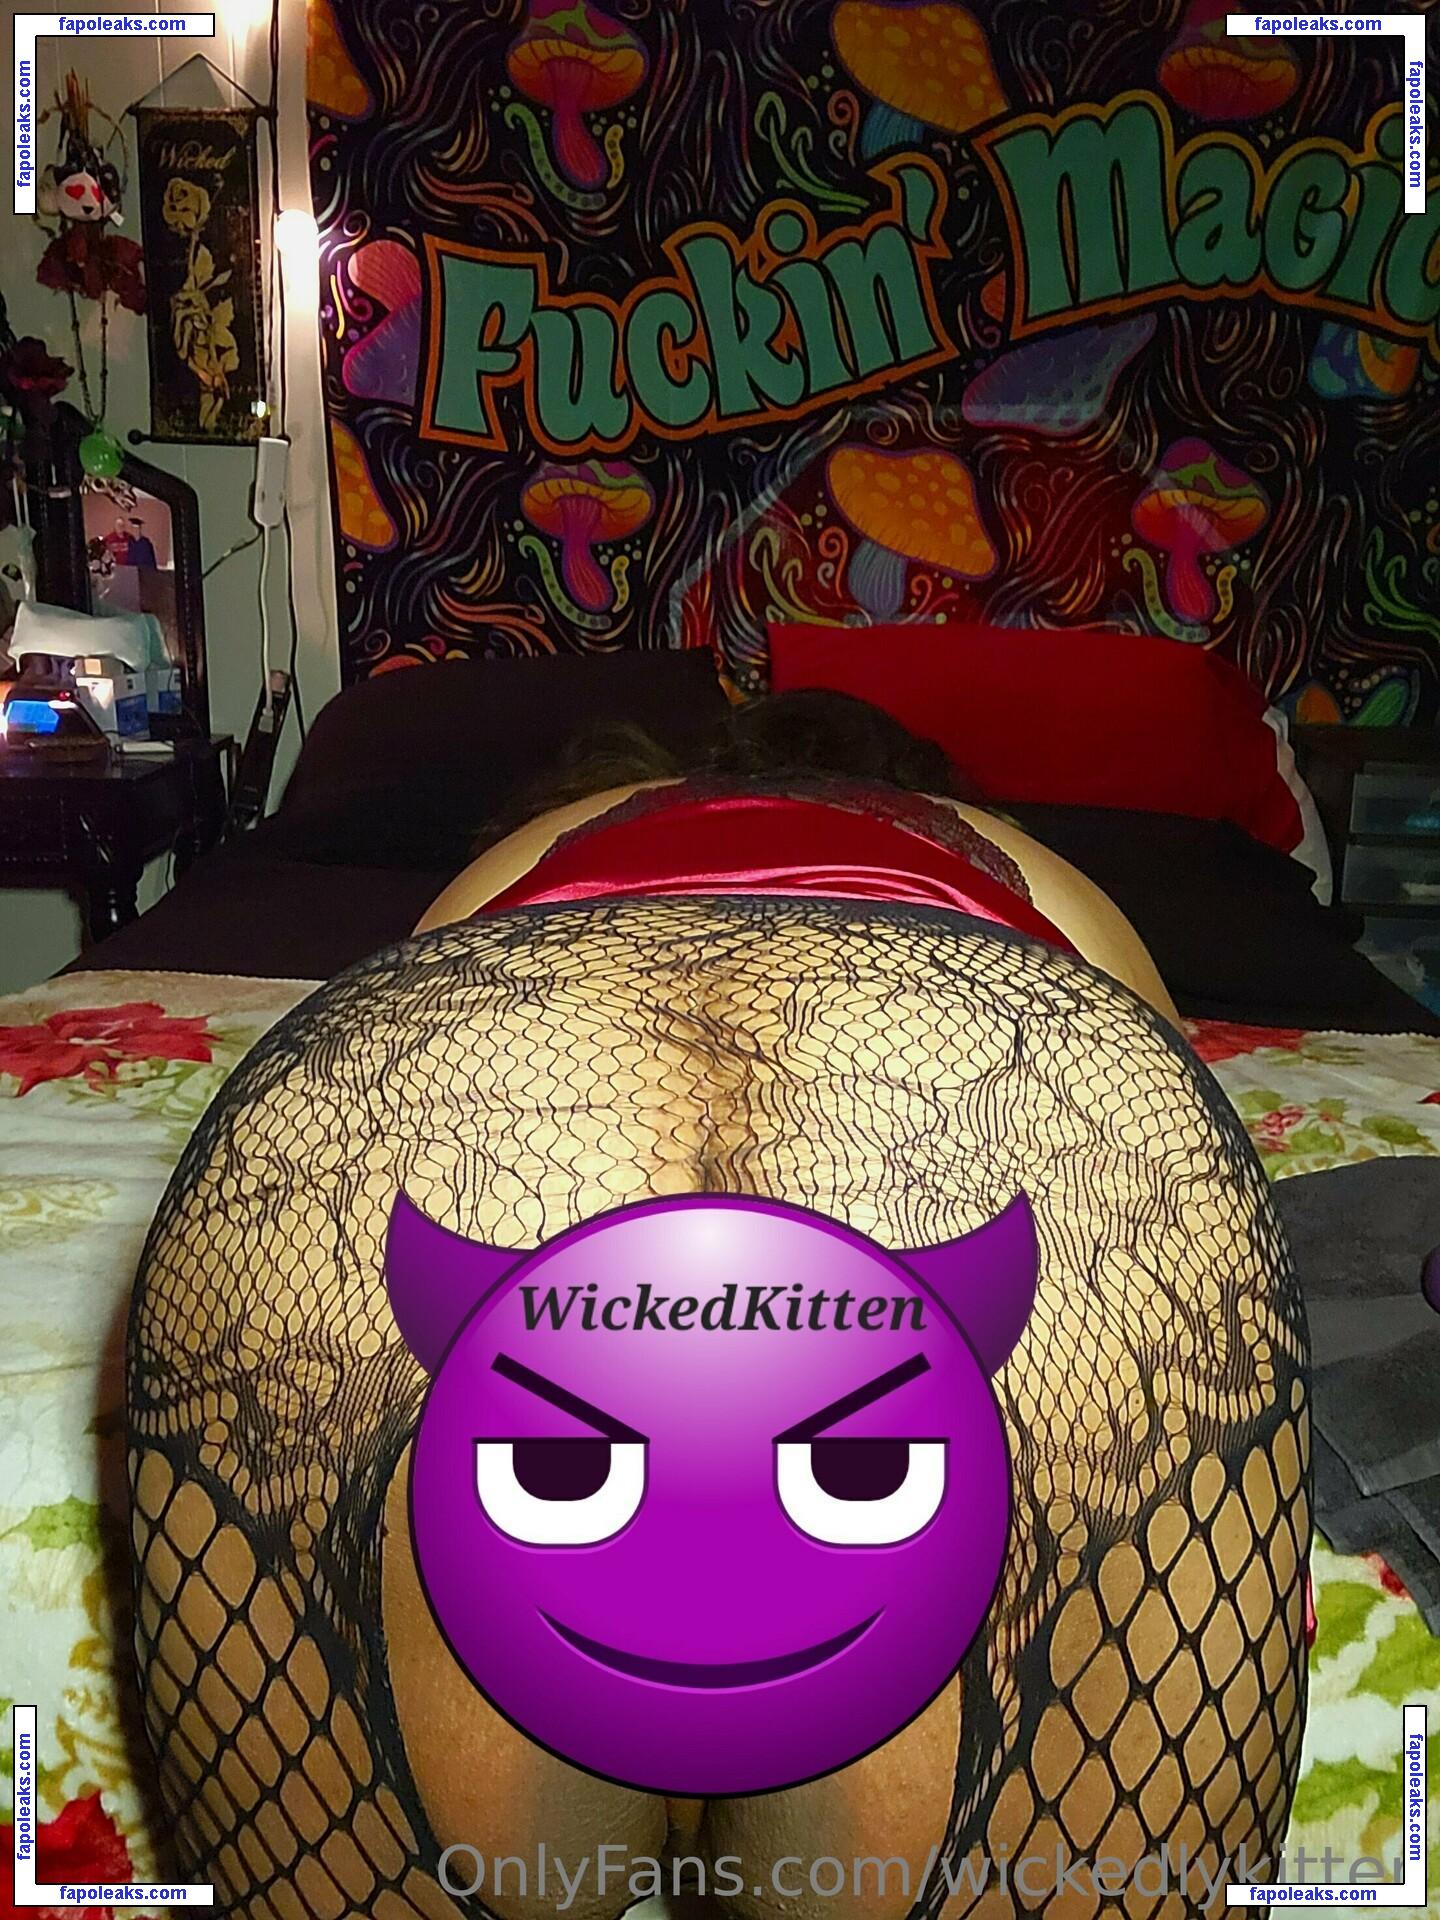 wickedlykitten / wickedkitten420 nude photo #0025 from OnlyFans